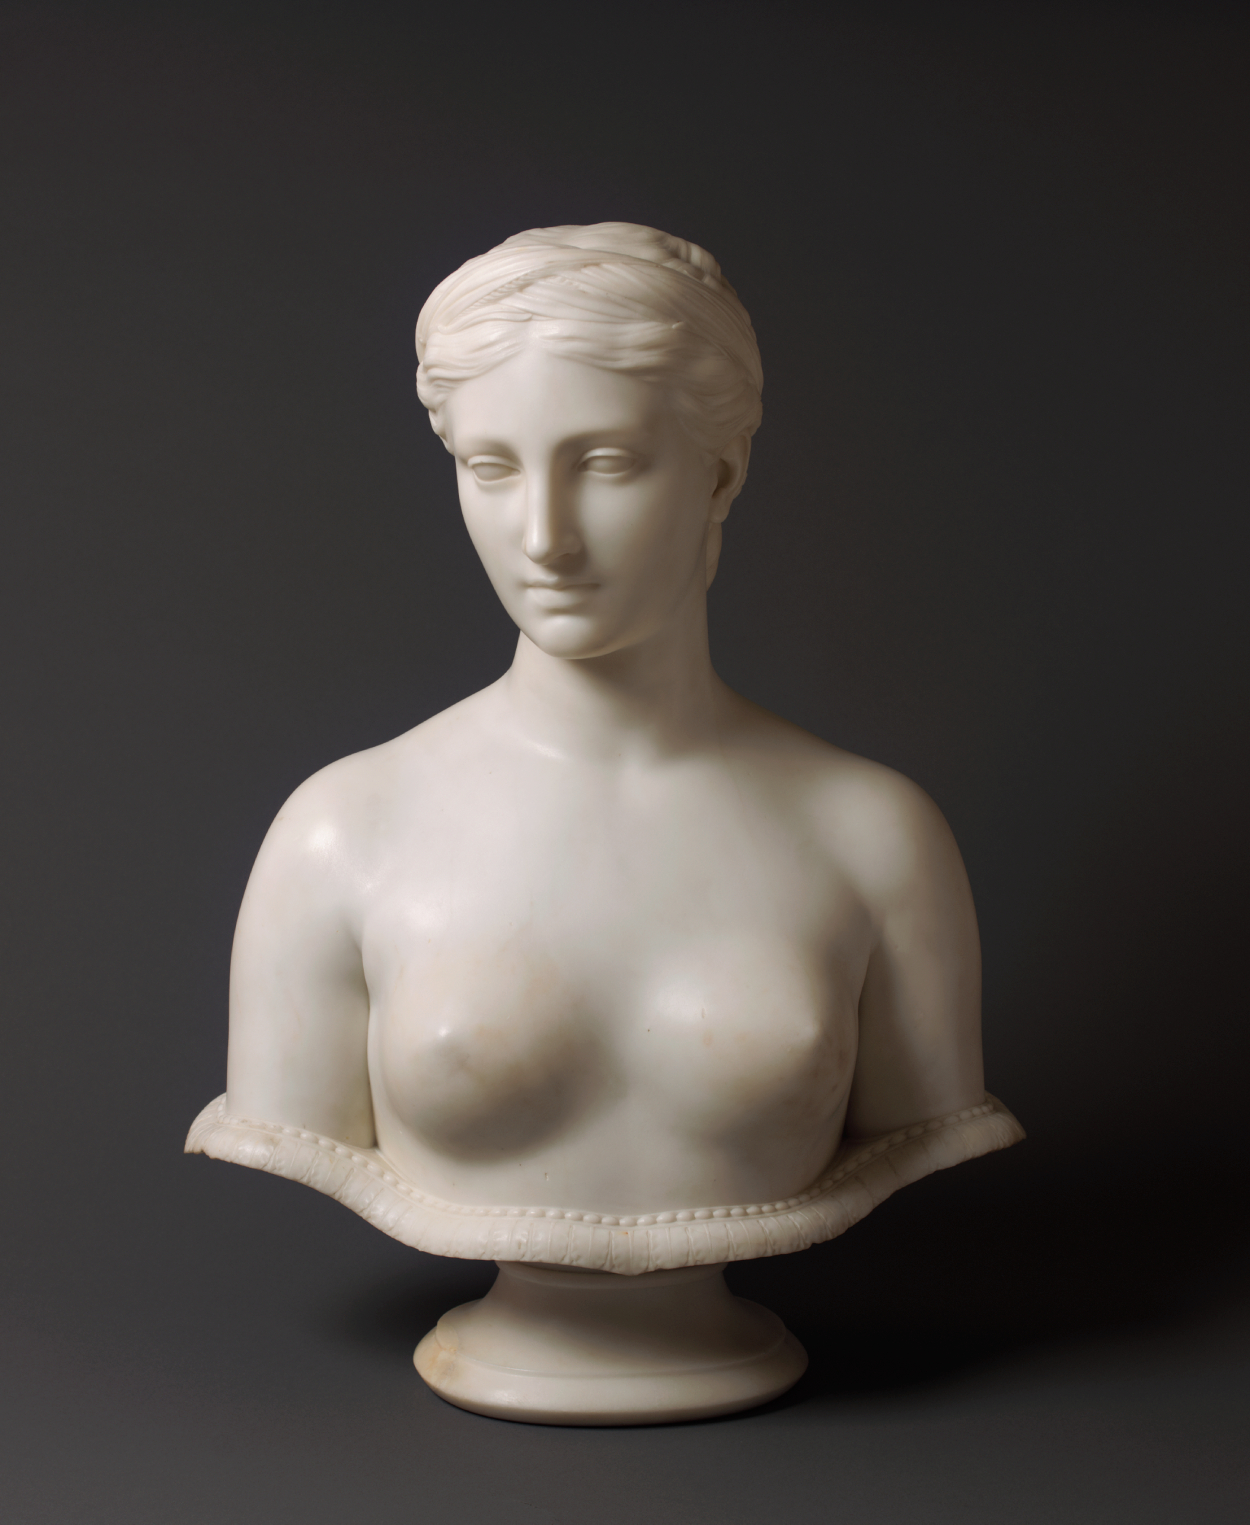 Prozerpina by Hiram Powers - ok. 1860 r. - 64,77 x 50,8 x 30,48 cm 